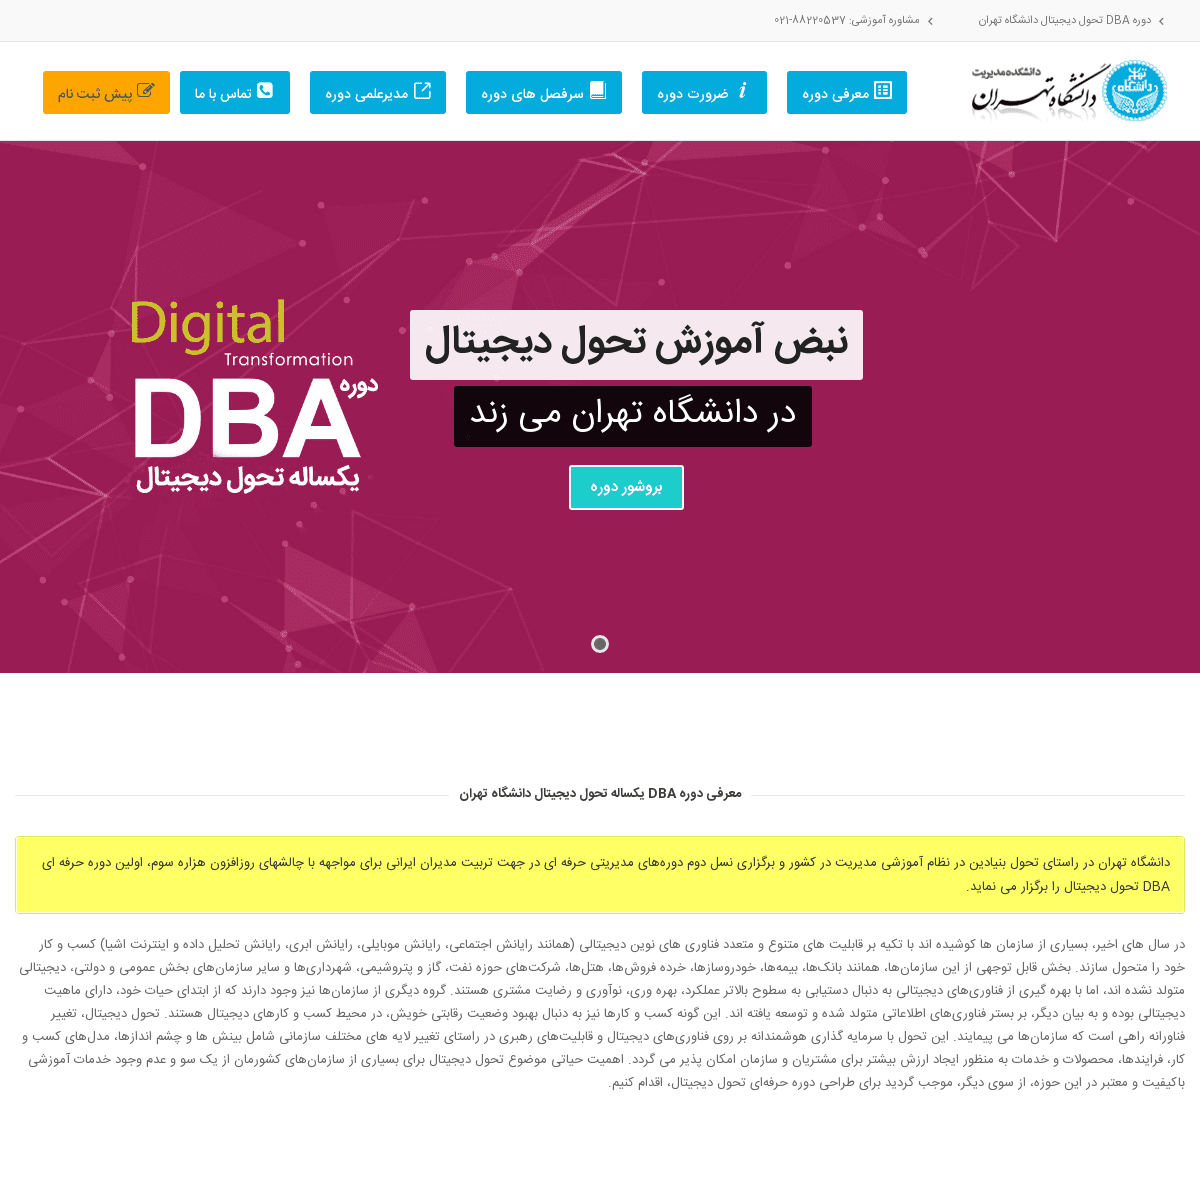 دوره DBA تحول دیجیتال دانشگاه تهران